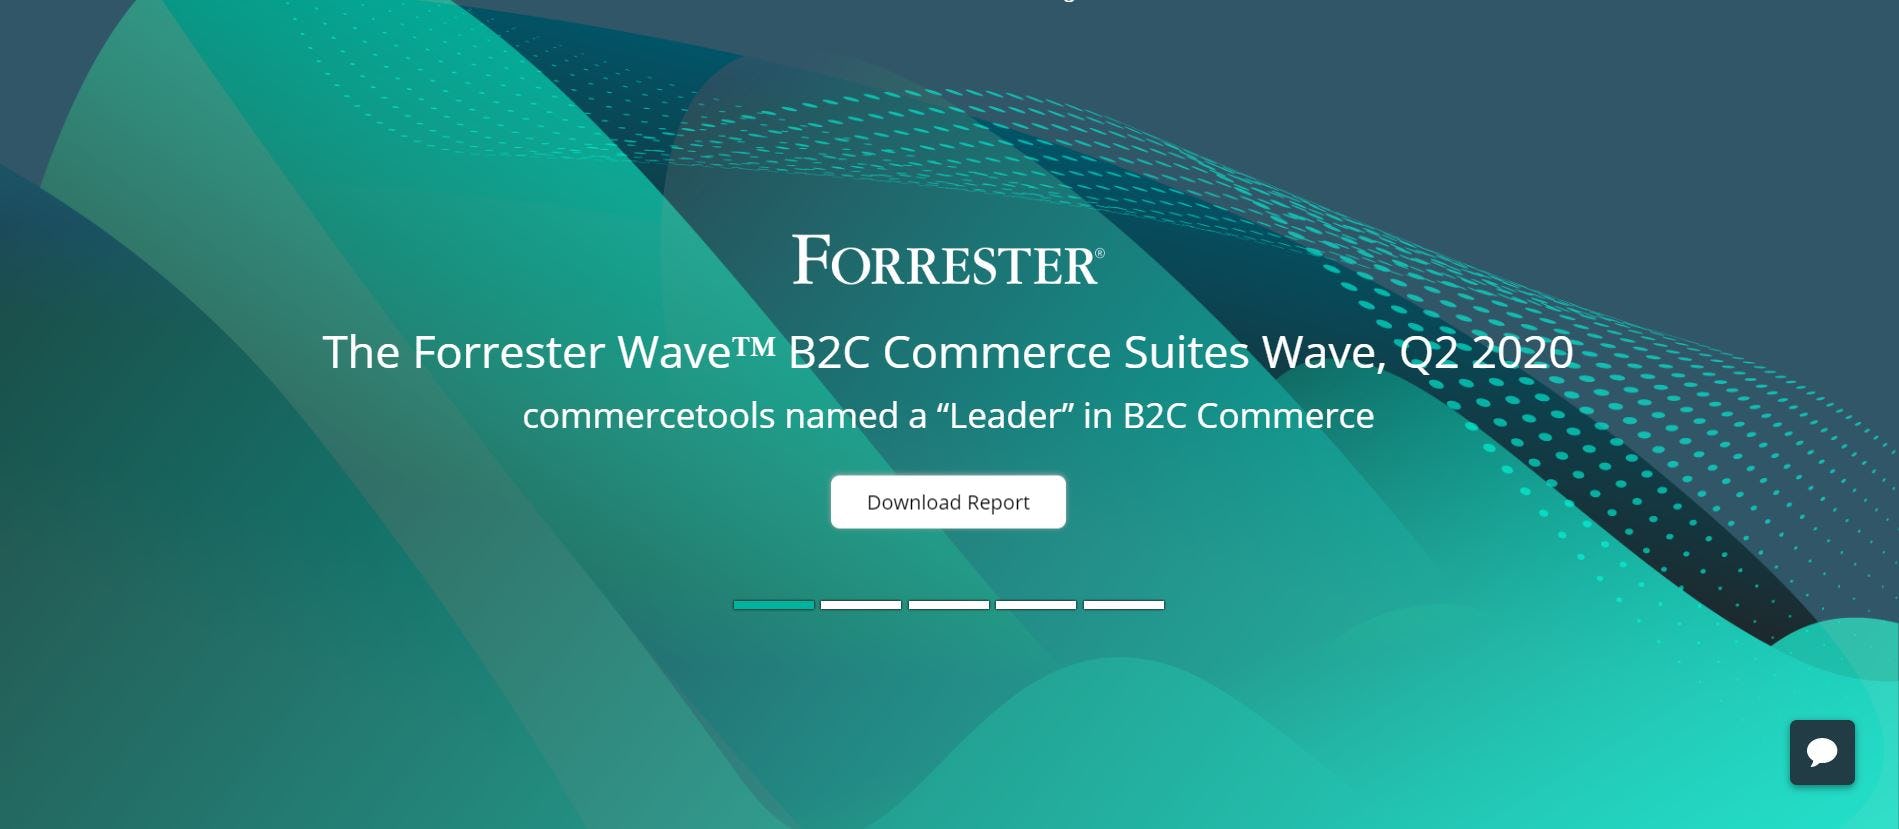 commercetools Ist Leader Im Forrester Wave Report